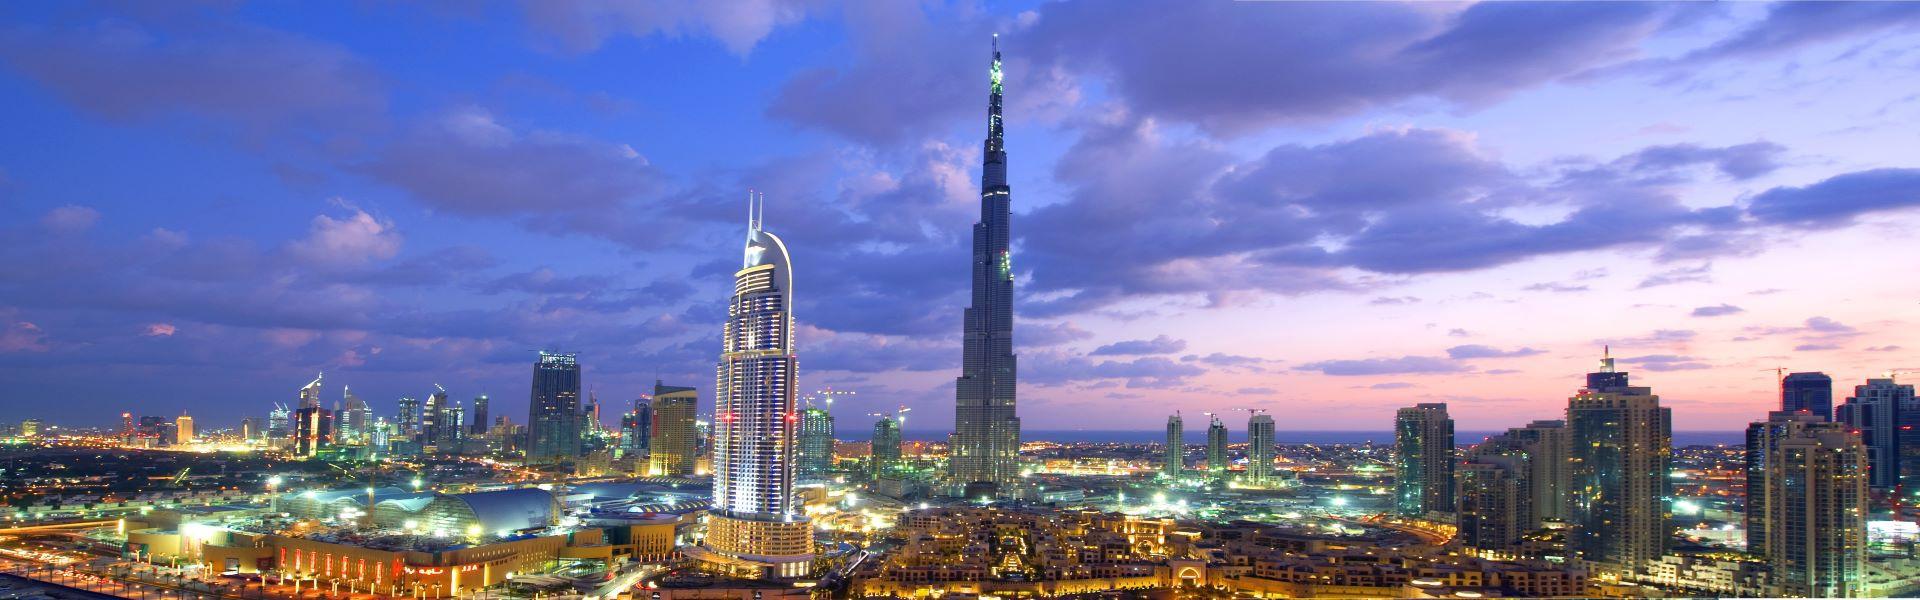 برج خلیفه دبی Burj Khalifa Dubai